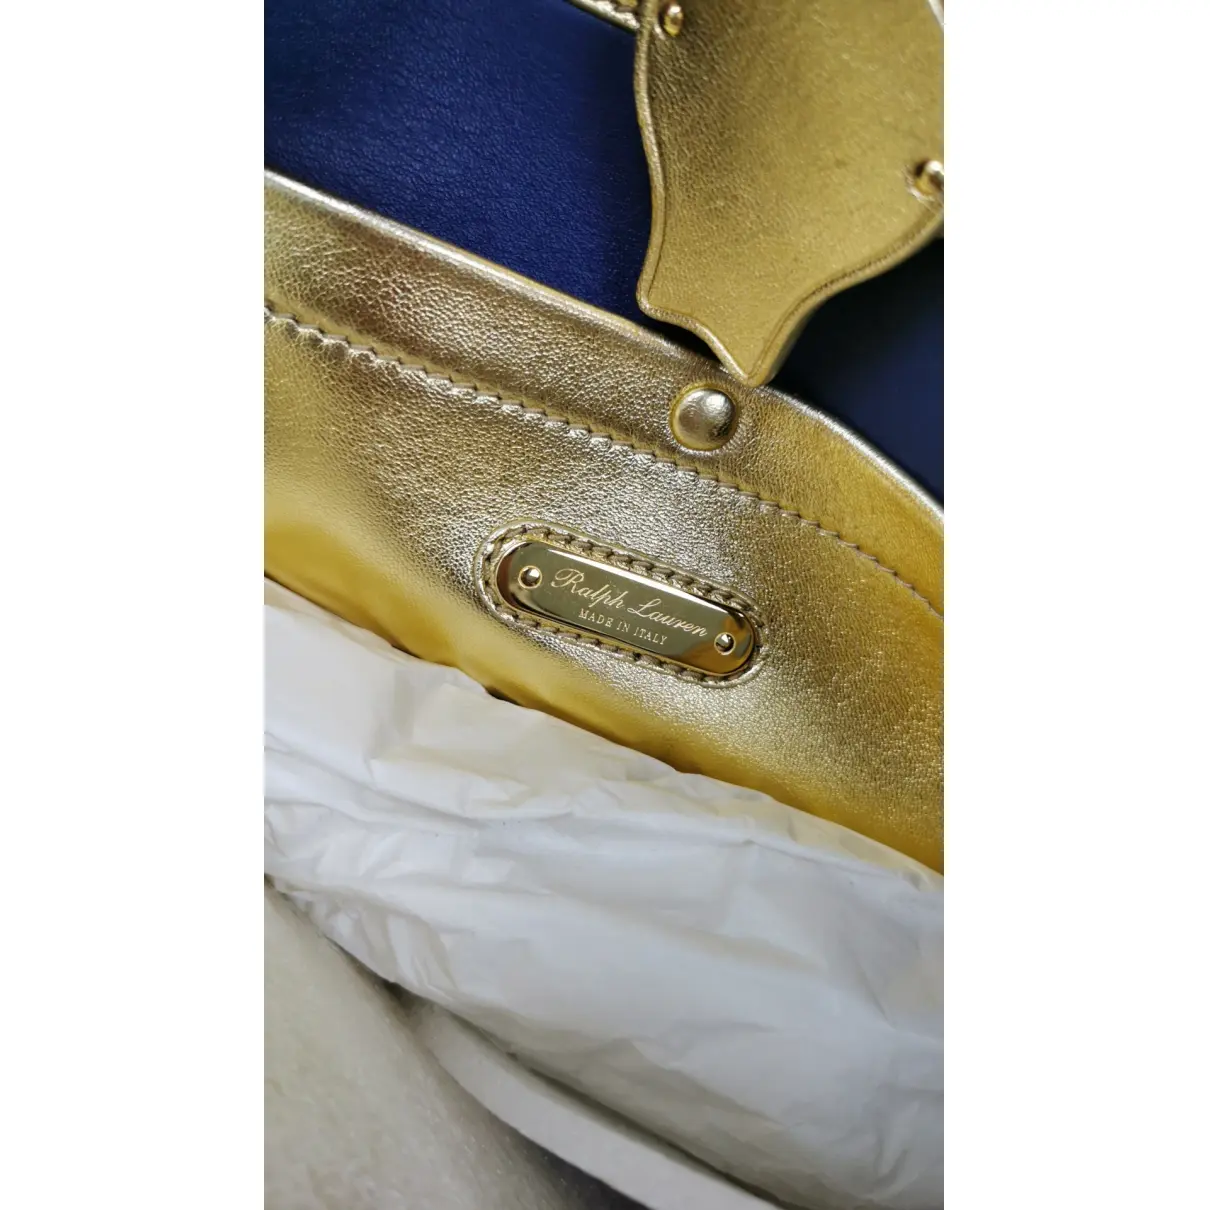 Luxury Ralph Lauren Handbags Women